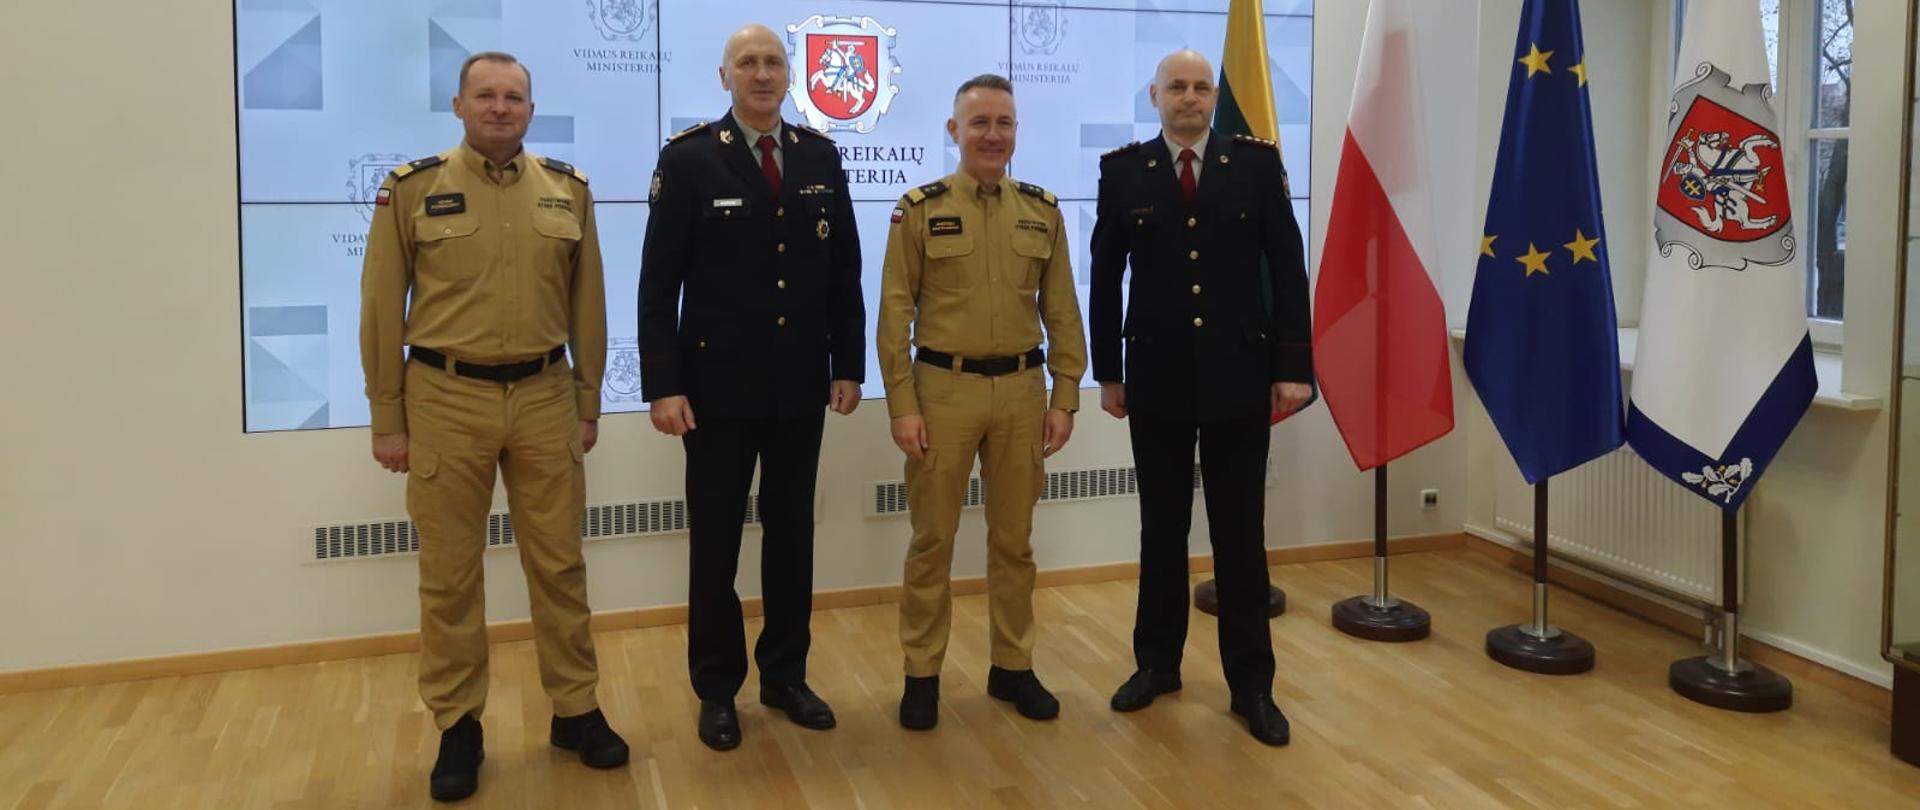 Na zdjęciu widać komendanta głównego PSP oraz zastępcę nadbryg. Adama Koniecznego wraz z Szefami Służb ratowniczych pozujących do zdjęcia na tle symboli Ministerstwa SW Litwy.